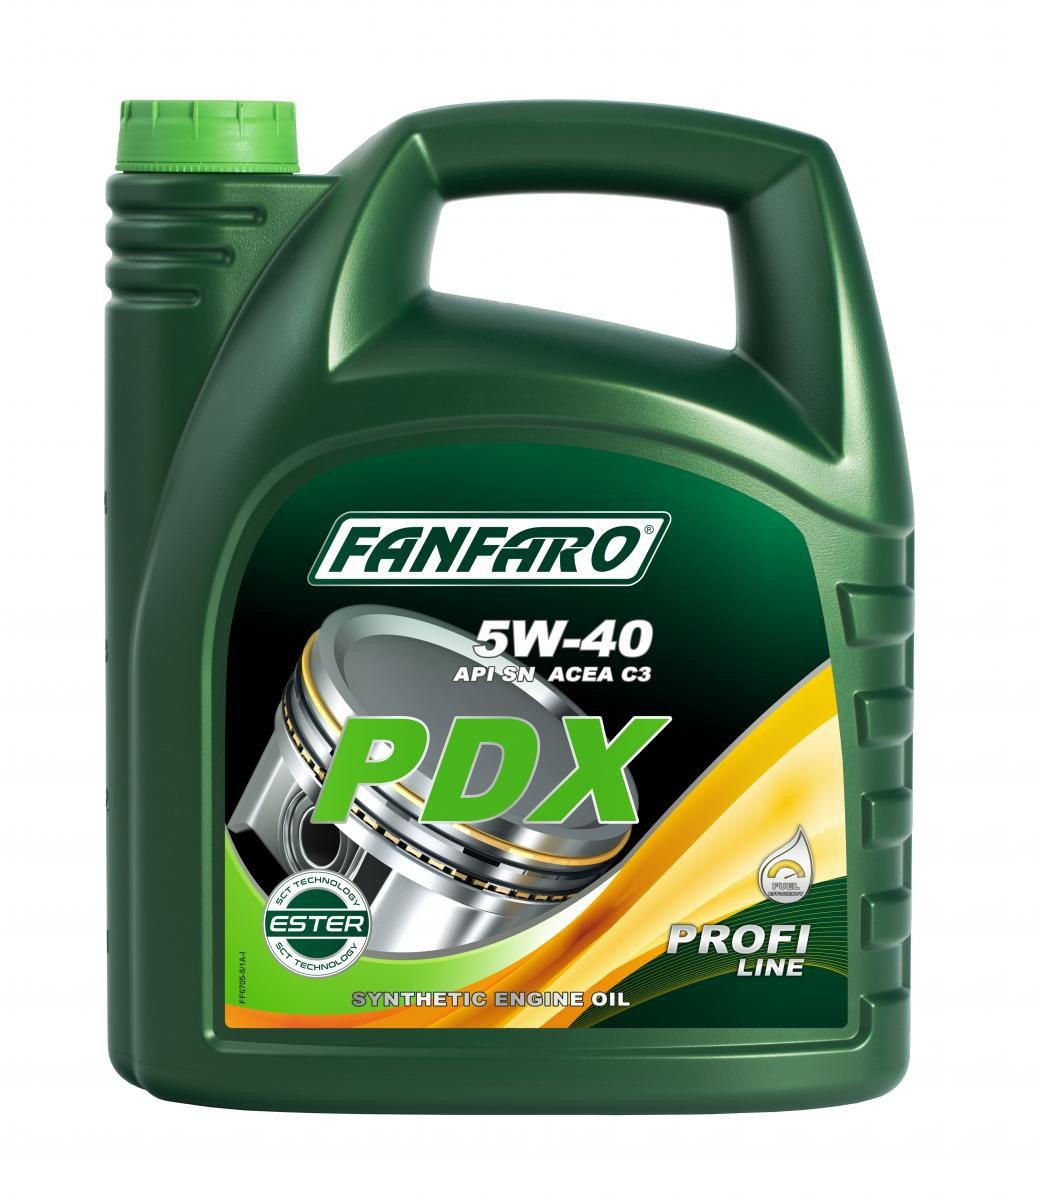 FANFARO Profi Line, PDX FF6705-5 Engine oil 5W-40, 5l, Synthetic Oil